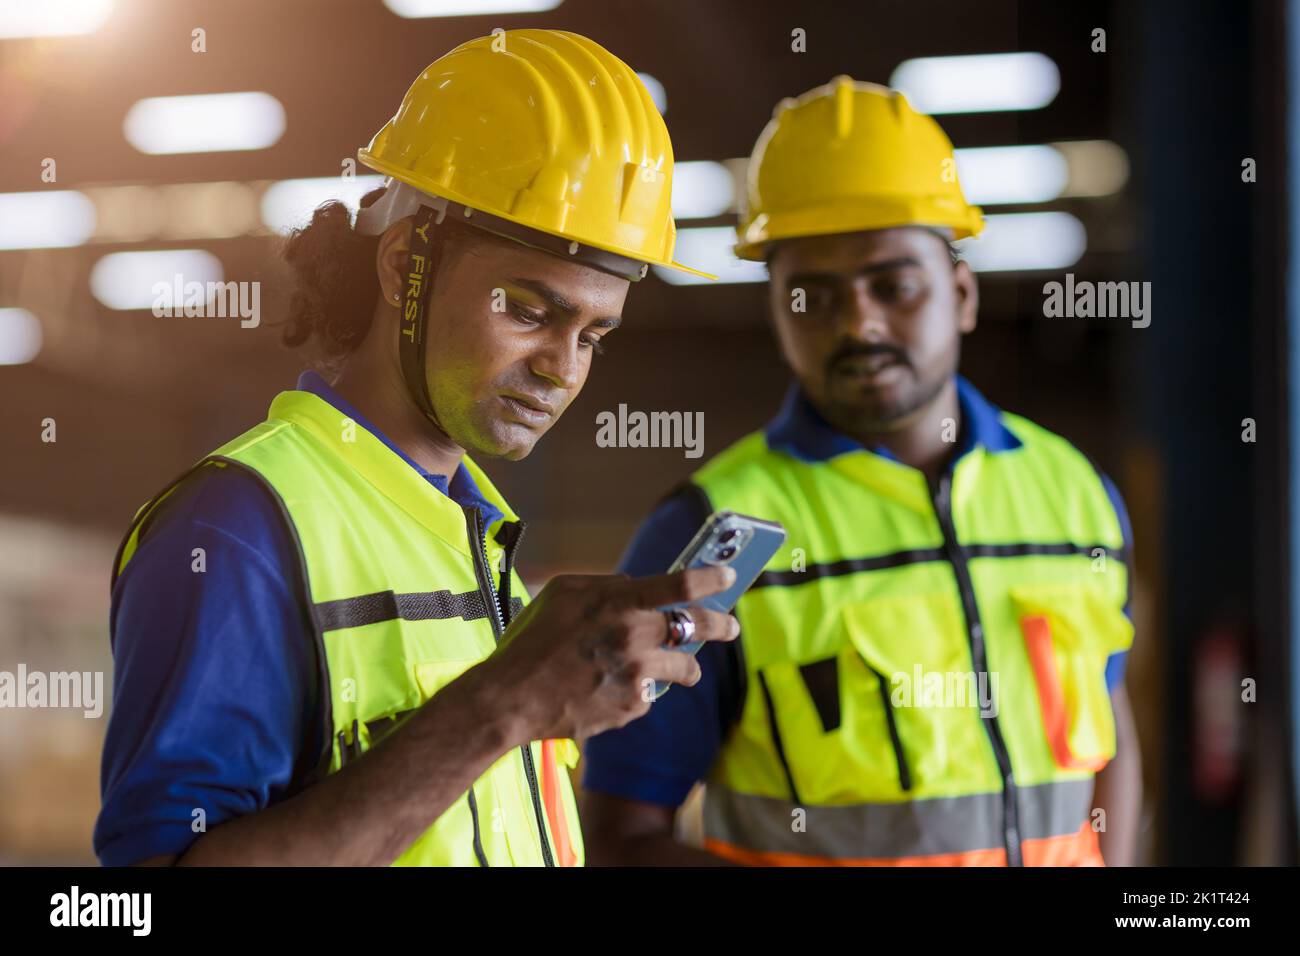 Fabrikingenieur Arbeiter lesen schlechte Nachrichten entlassen benachrichtigen auf dem Smartphone ernsthafte Sorge Ausdruck Stockfoto